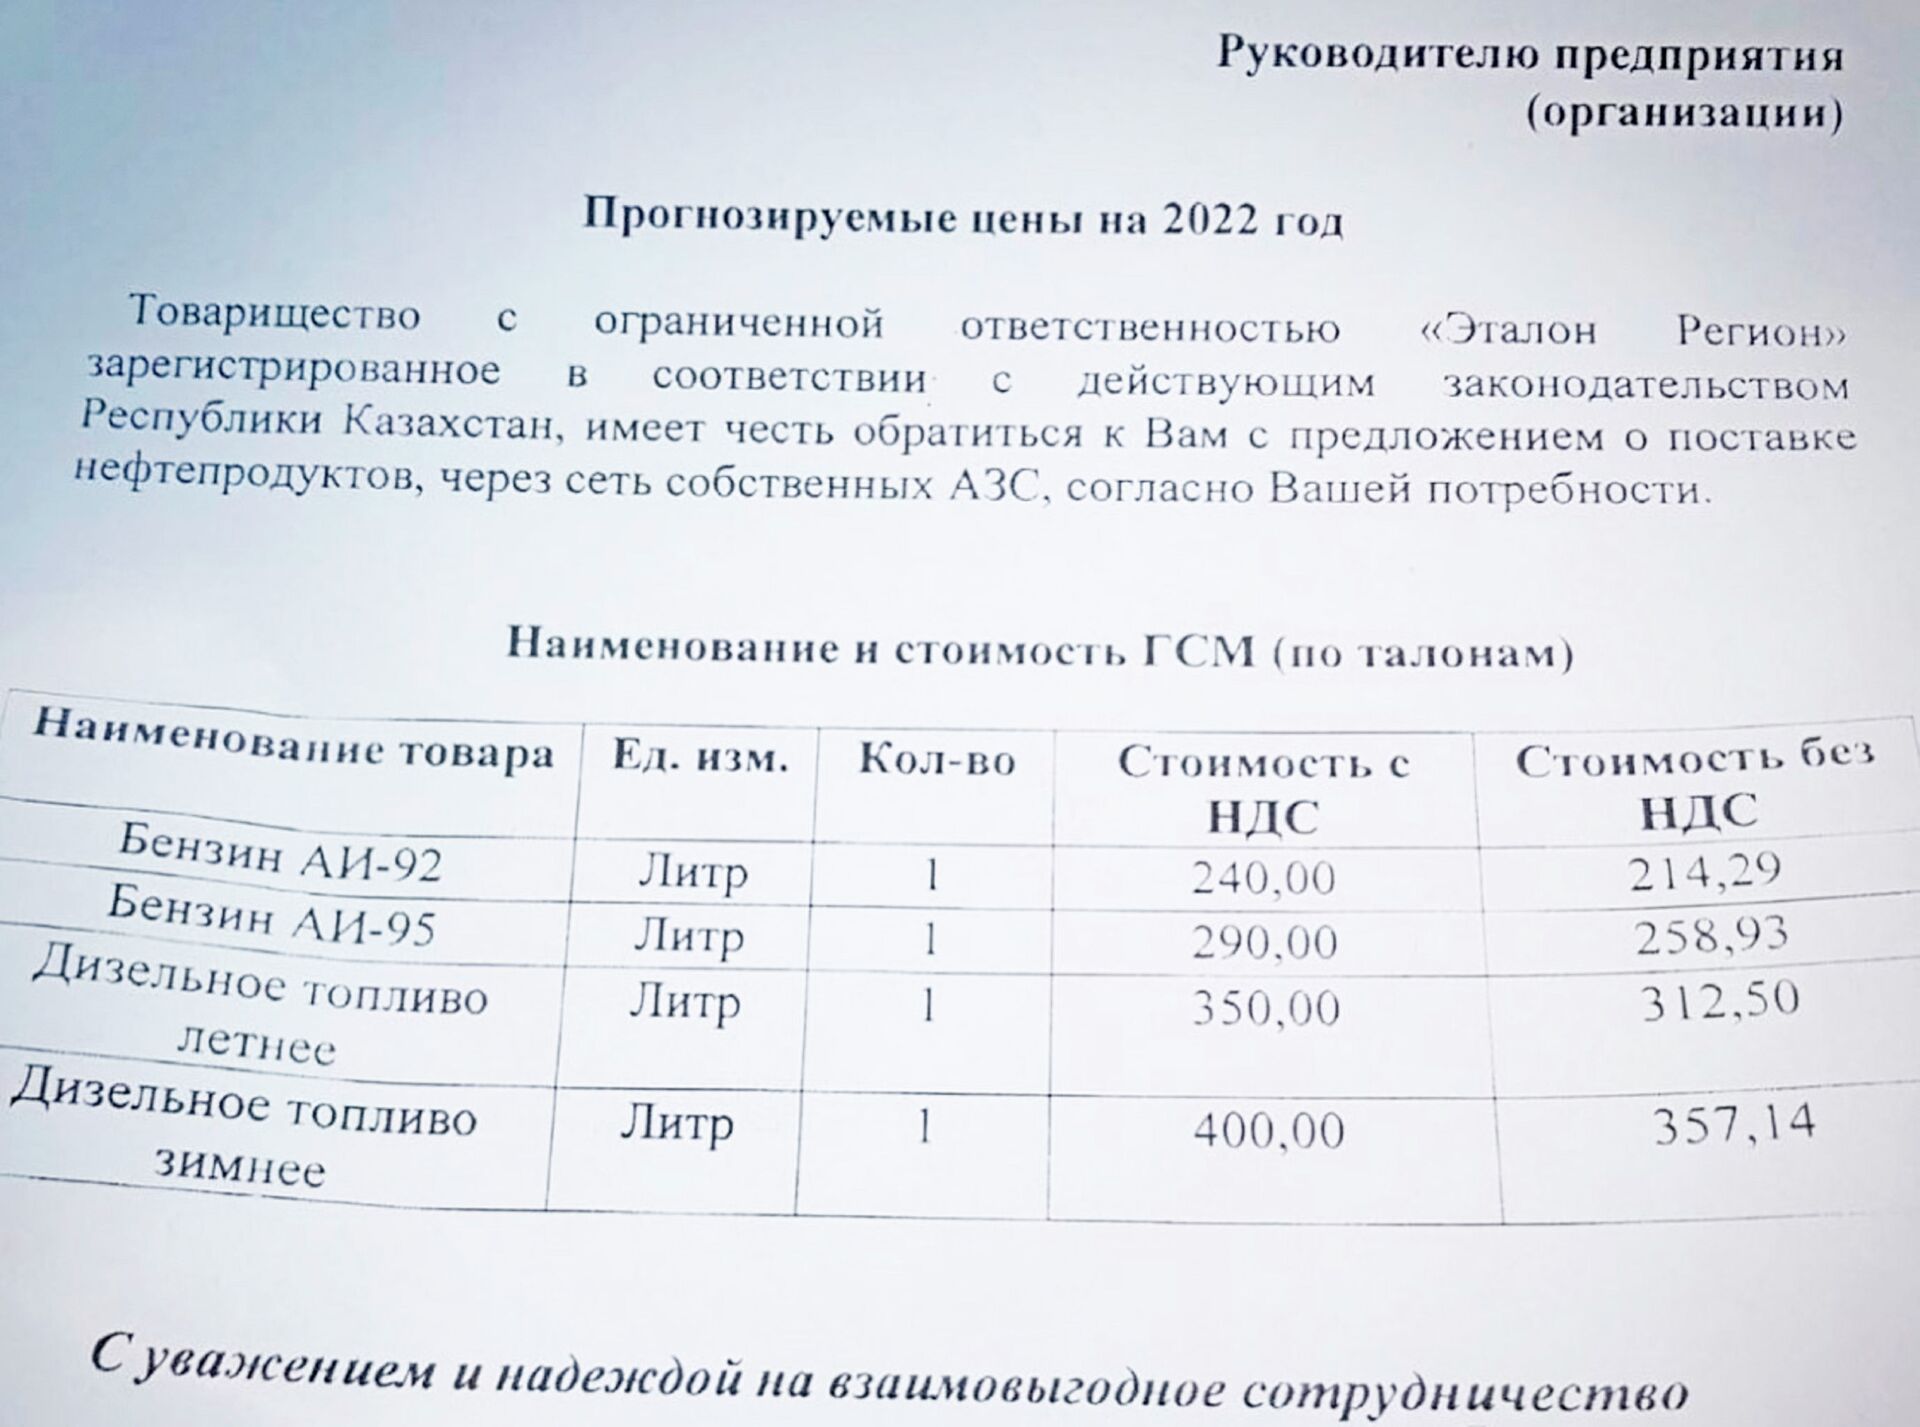 Письмо с прогнозируемыми ценами на ГСМ на 2022 год - Sputnik Казахстан, 1920, 01.02.2022